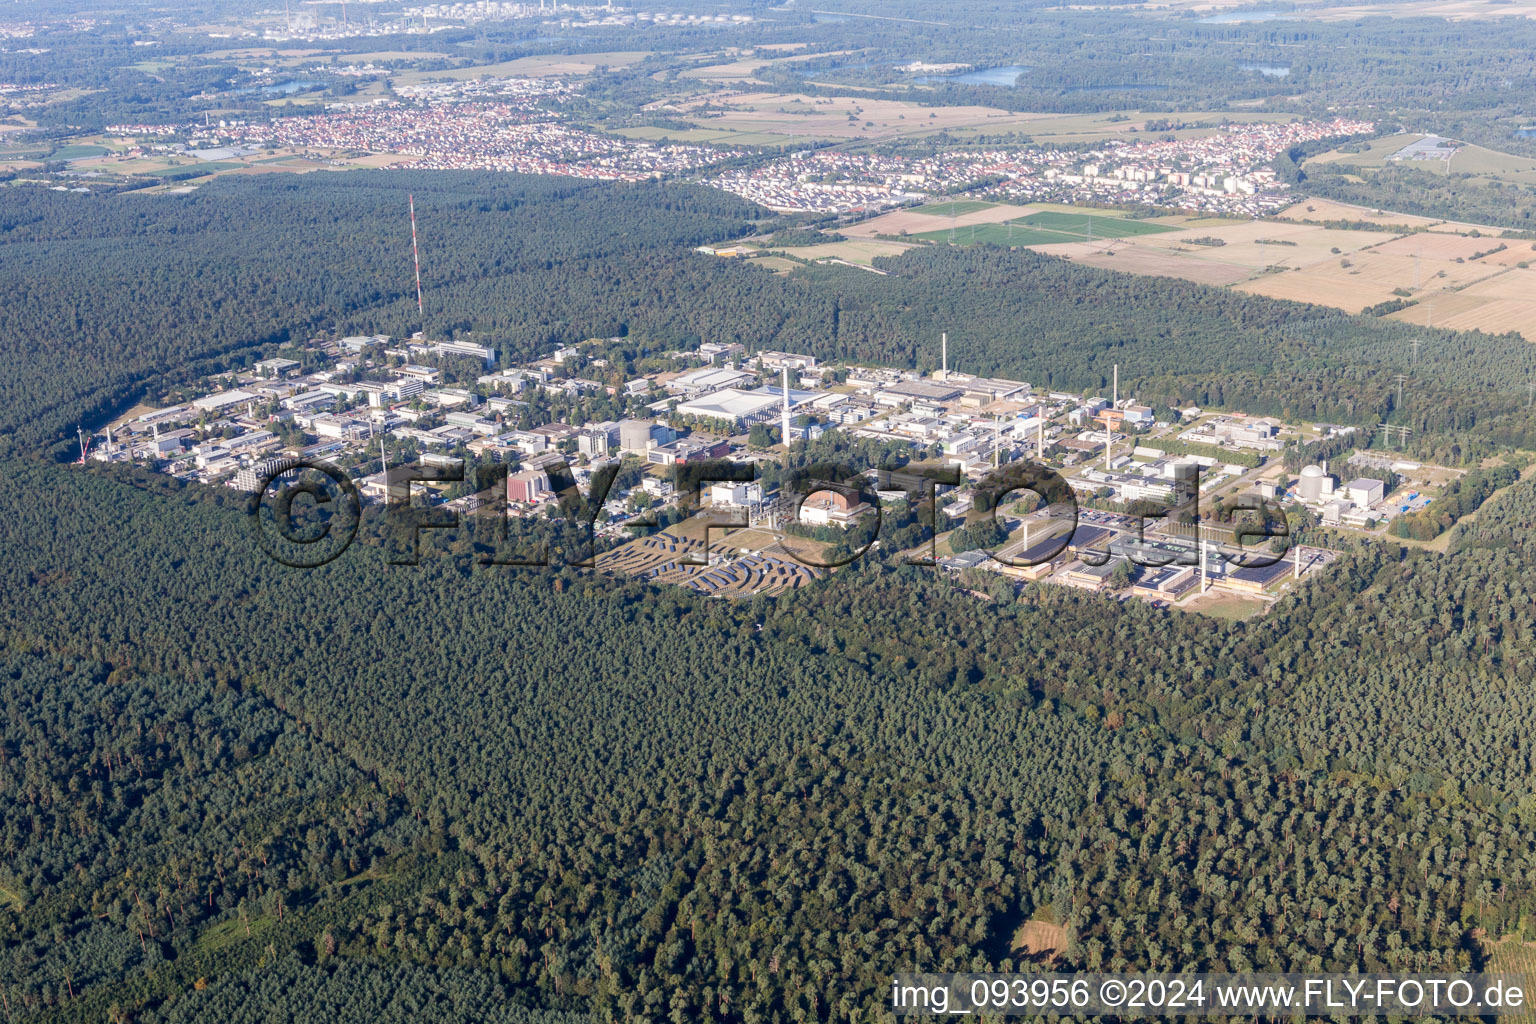 Vue aérienne de Campus University KIT - Campus Nord (ancien Centre de Recherche Nucléaire de Karlsruhe) à le quartier Leopoldshafen in Eggenstein-Leopoldshafen dans le département Bade-Wurtemberg, Allemagne